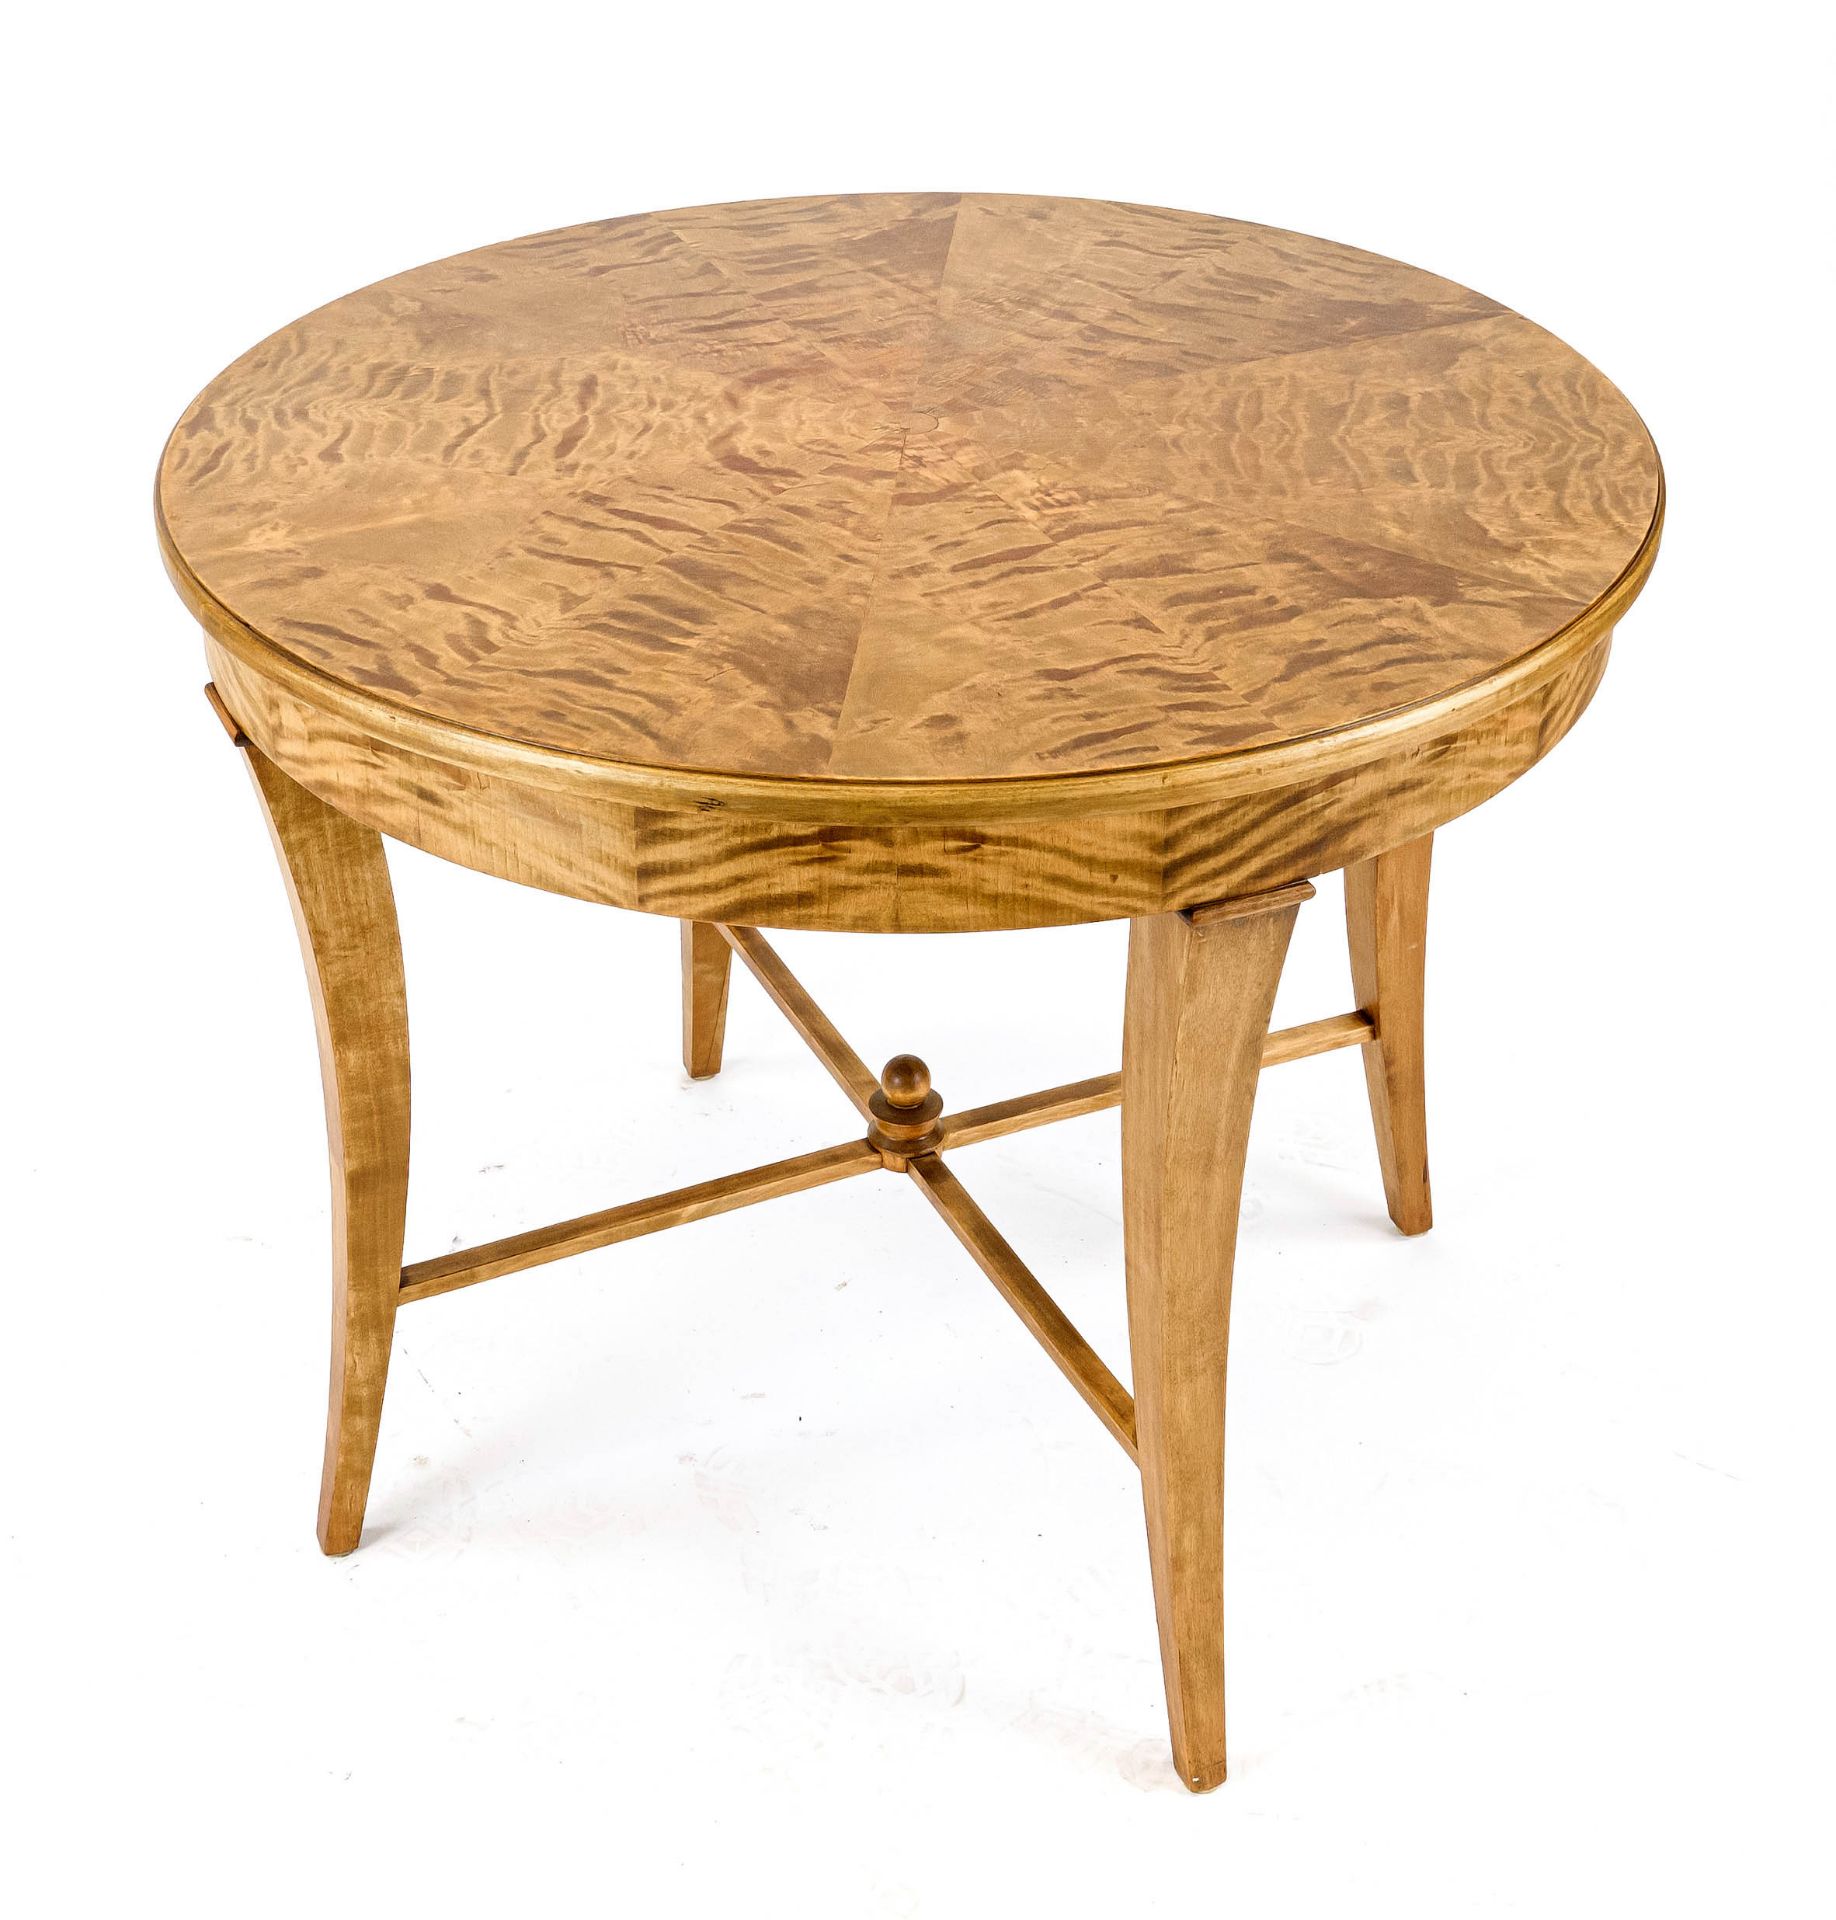 Round table in Biedermeier style around 1900, flamed birch, h. 72 cm, d. 90 cm